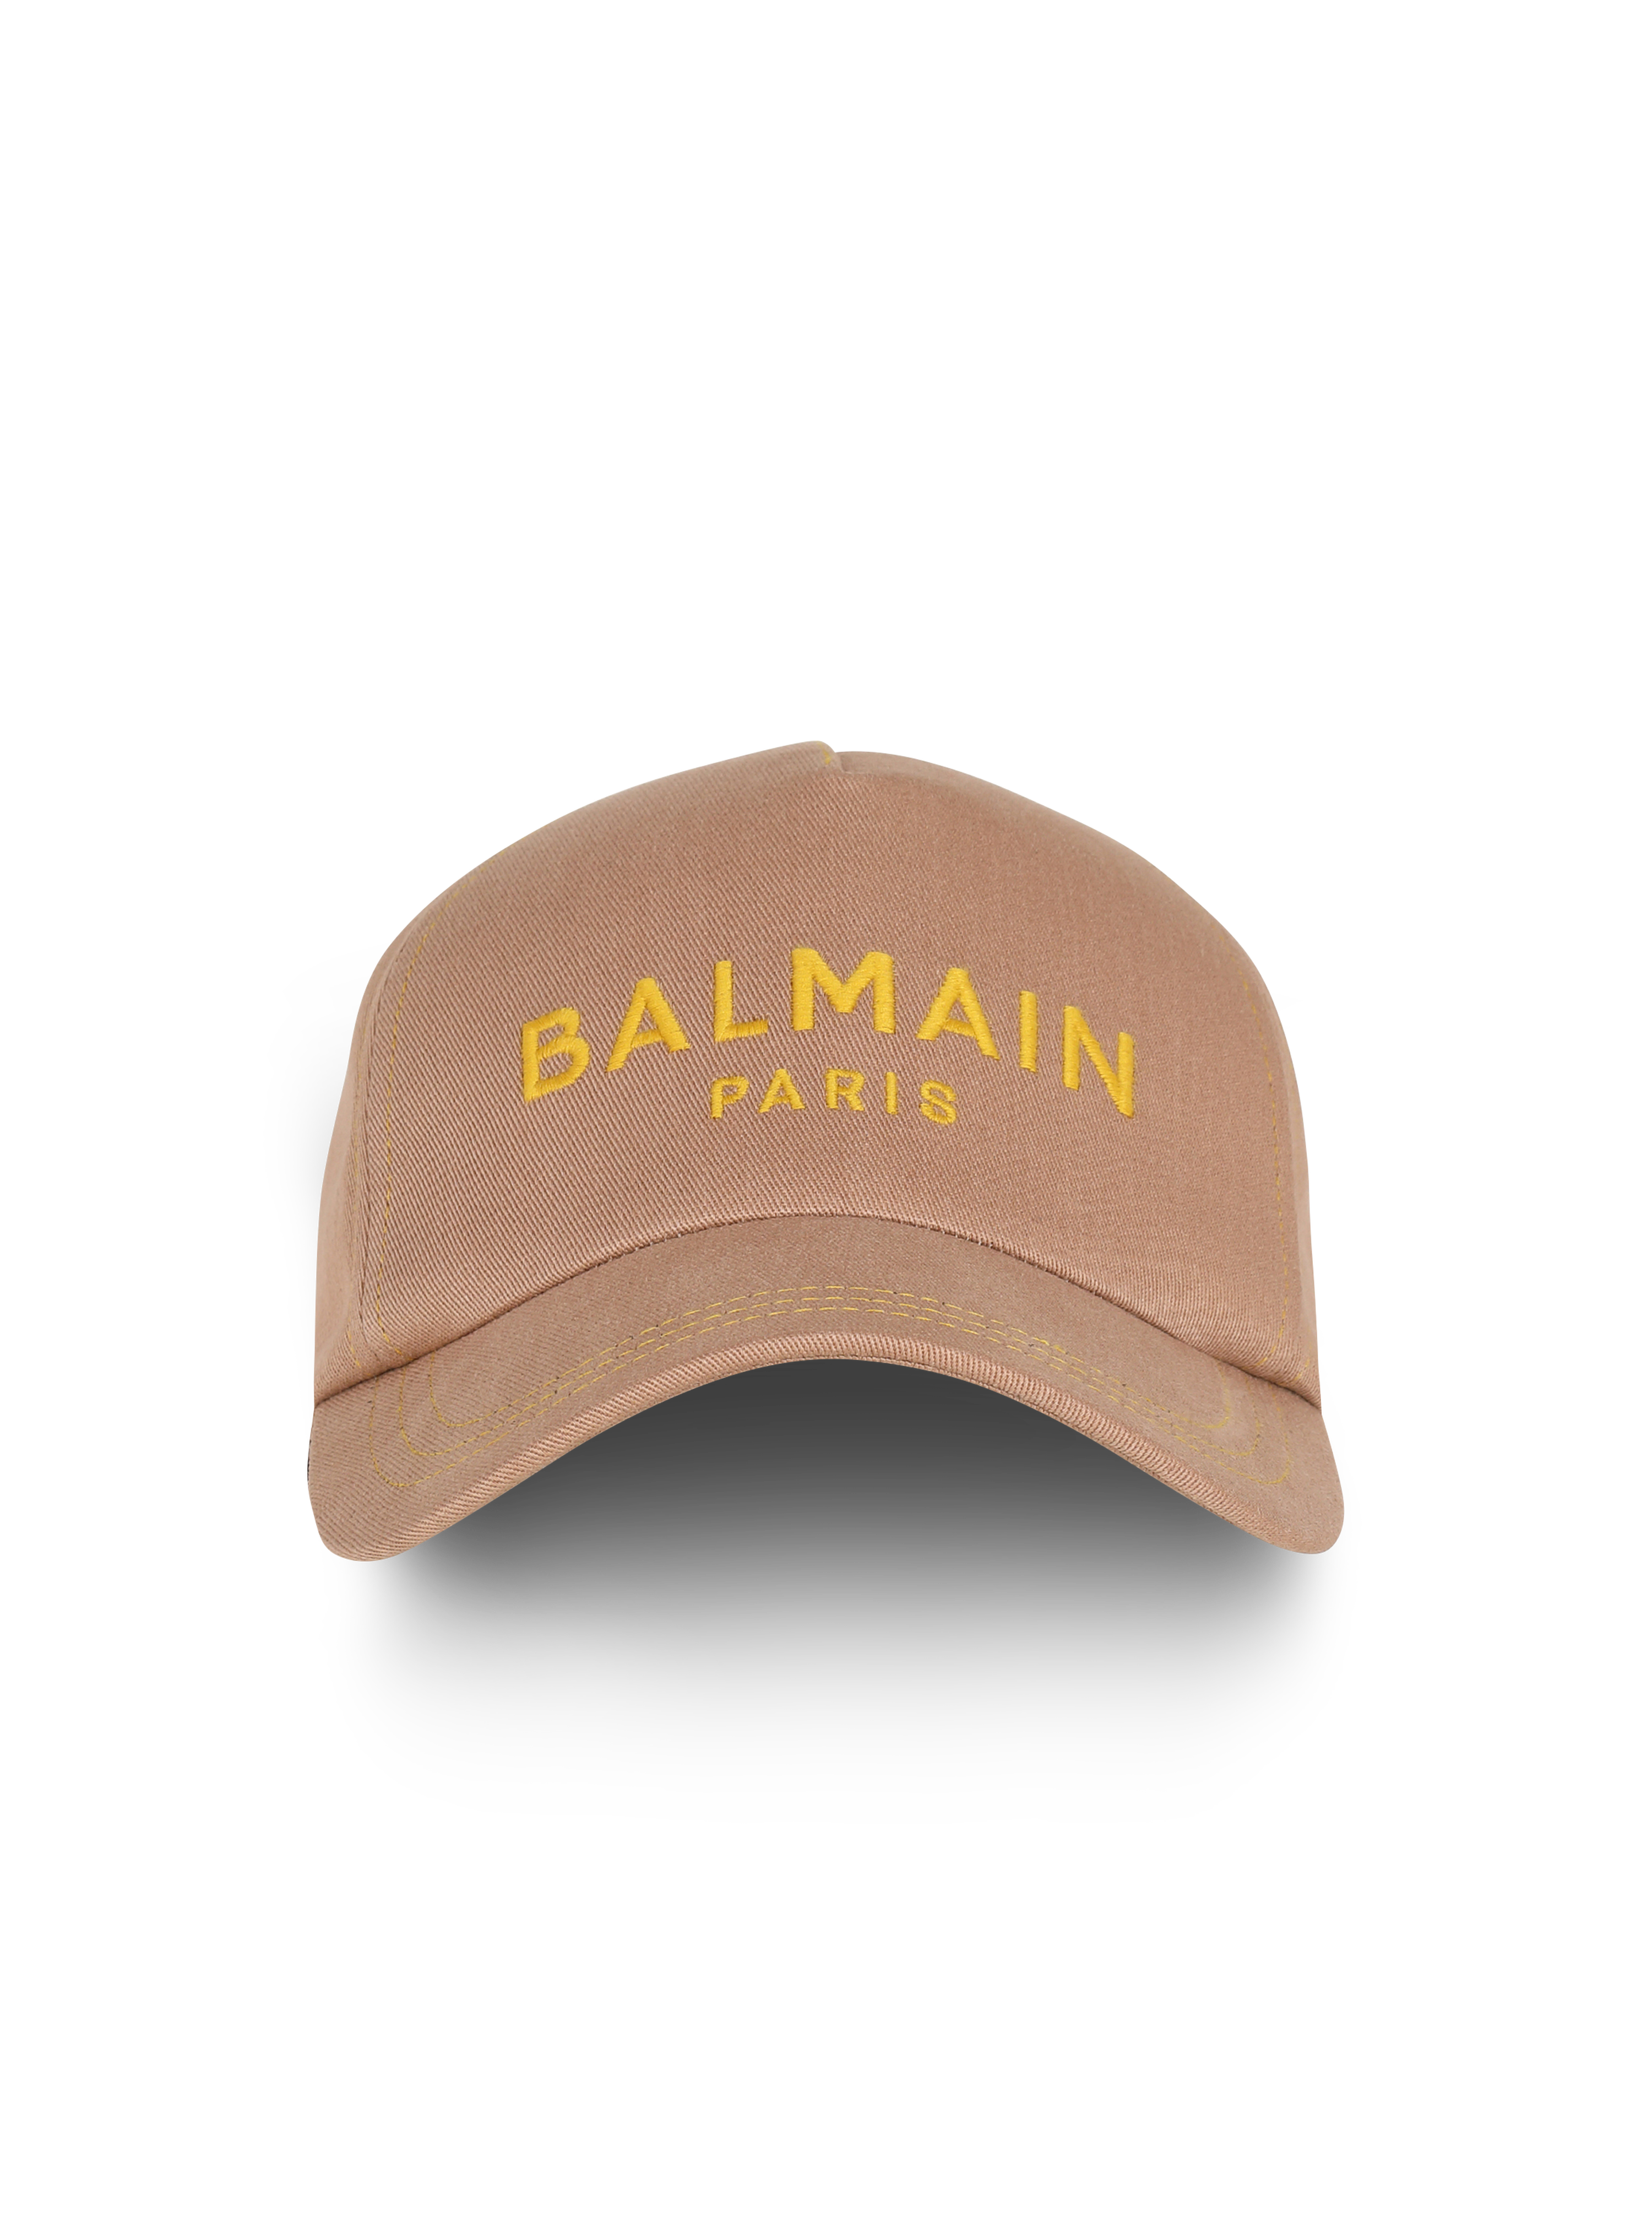 Cotton cap with Balmain logo, beige